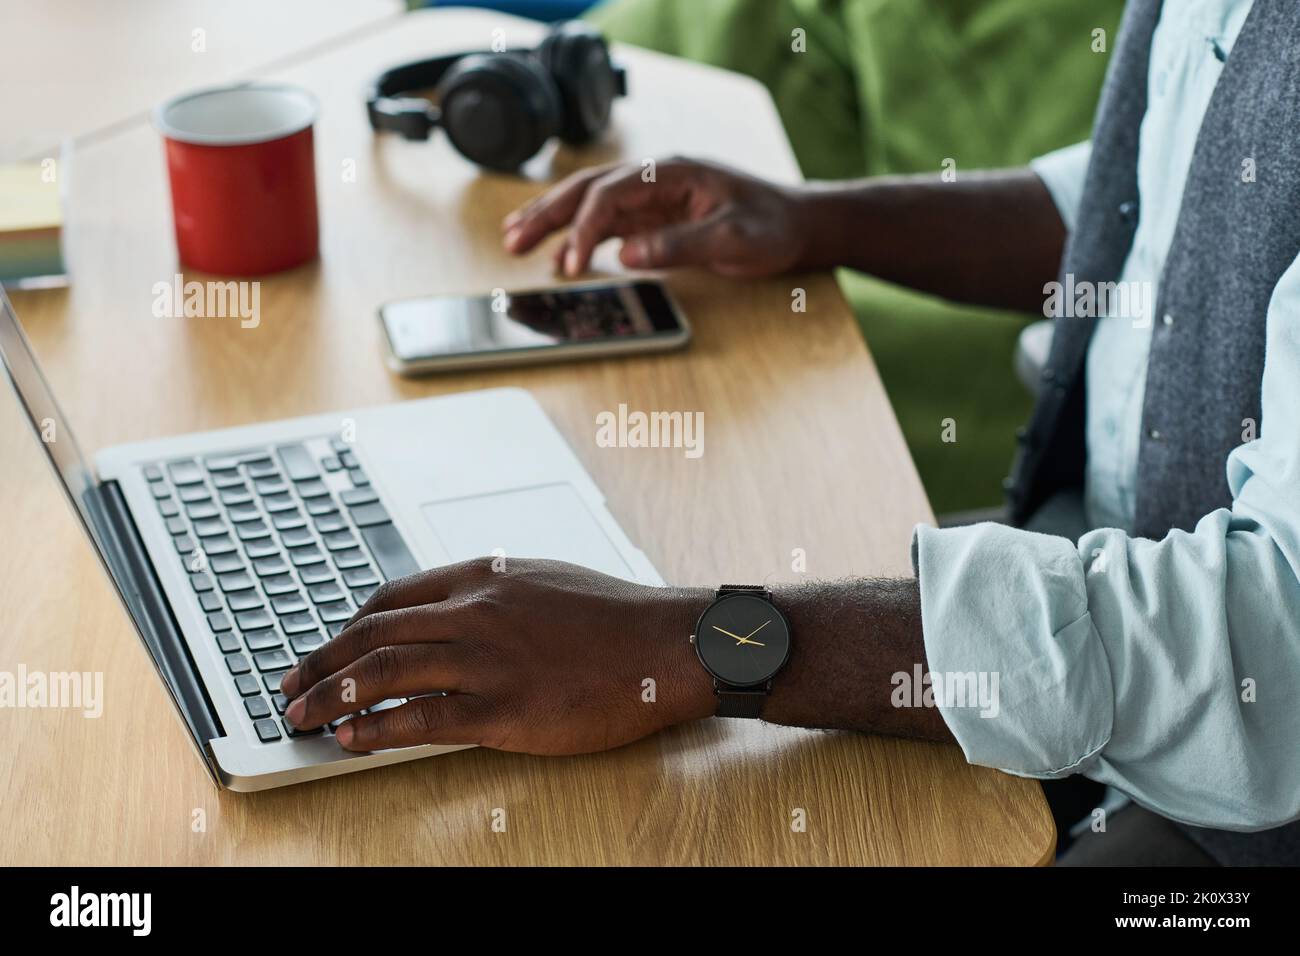 Hände eines jungen schwarzen Mannes in formalwear, der die Hand über die Tastatur des Laptops hält, während er auf dem Smartphone am Arbeitsplatz scrollt Stockfoto